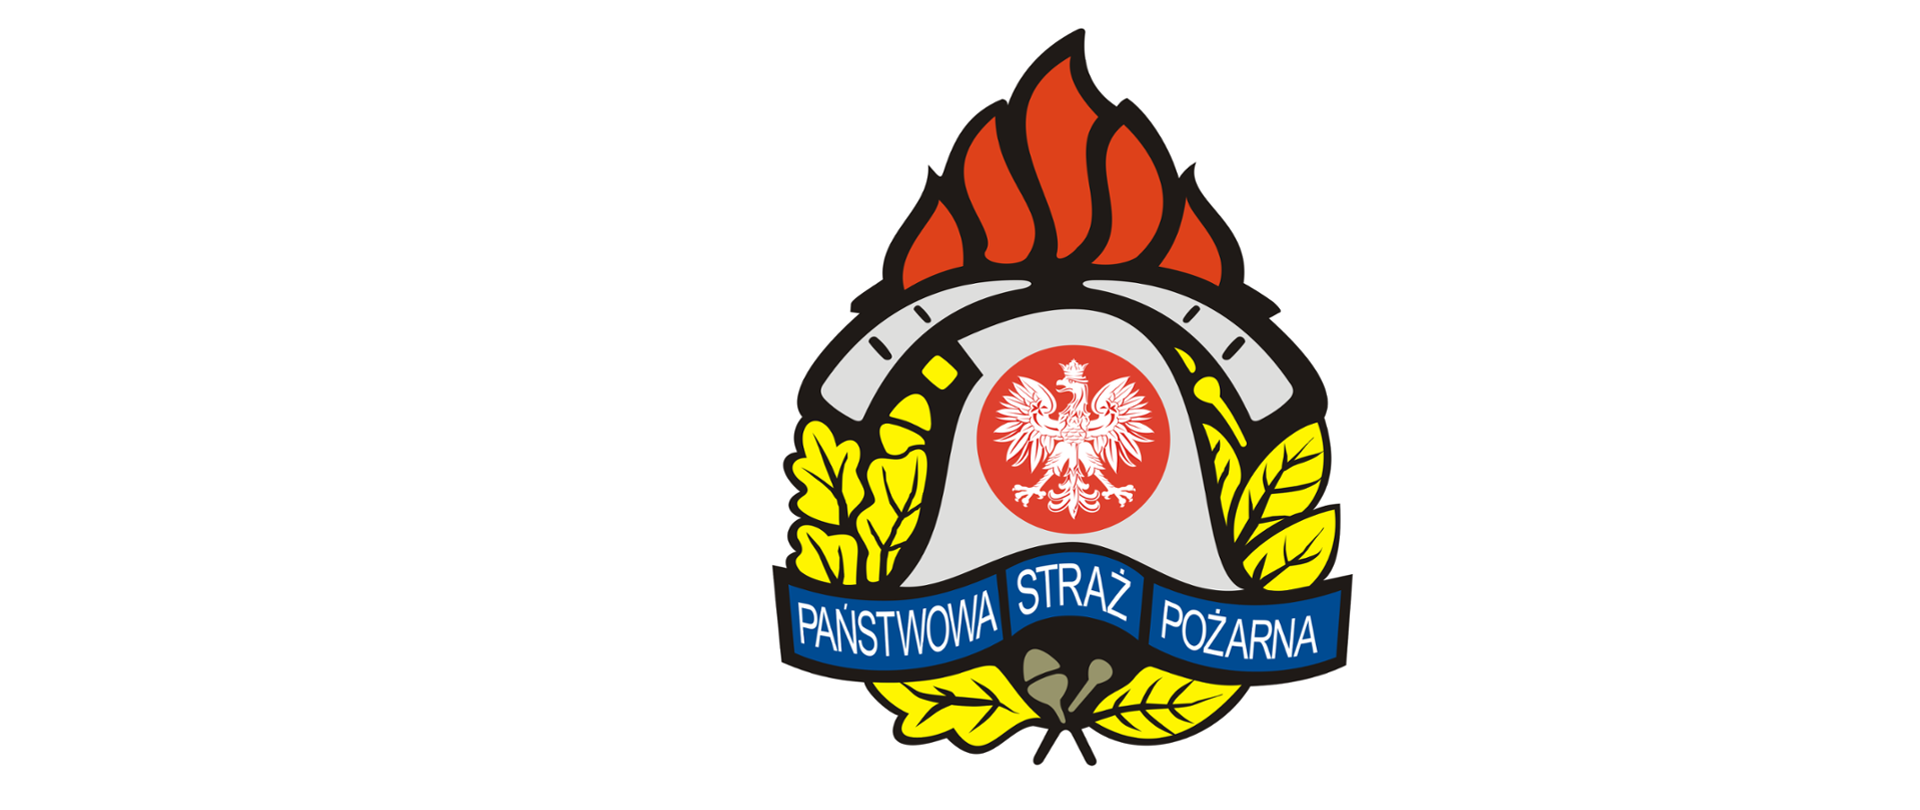 Zdjęcie przedstawiające Logo Państwowej Straży Pożarnej